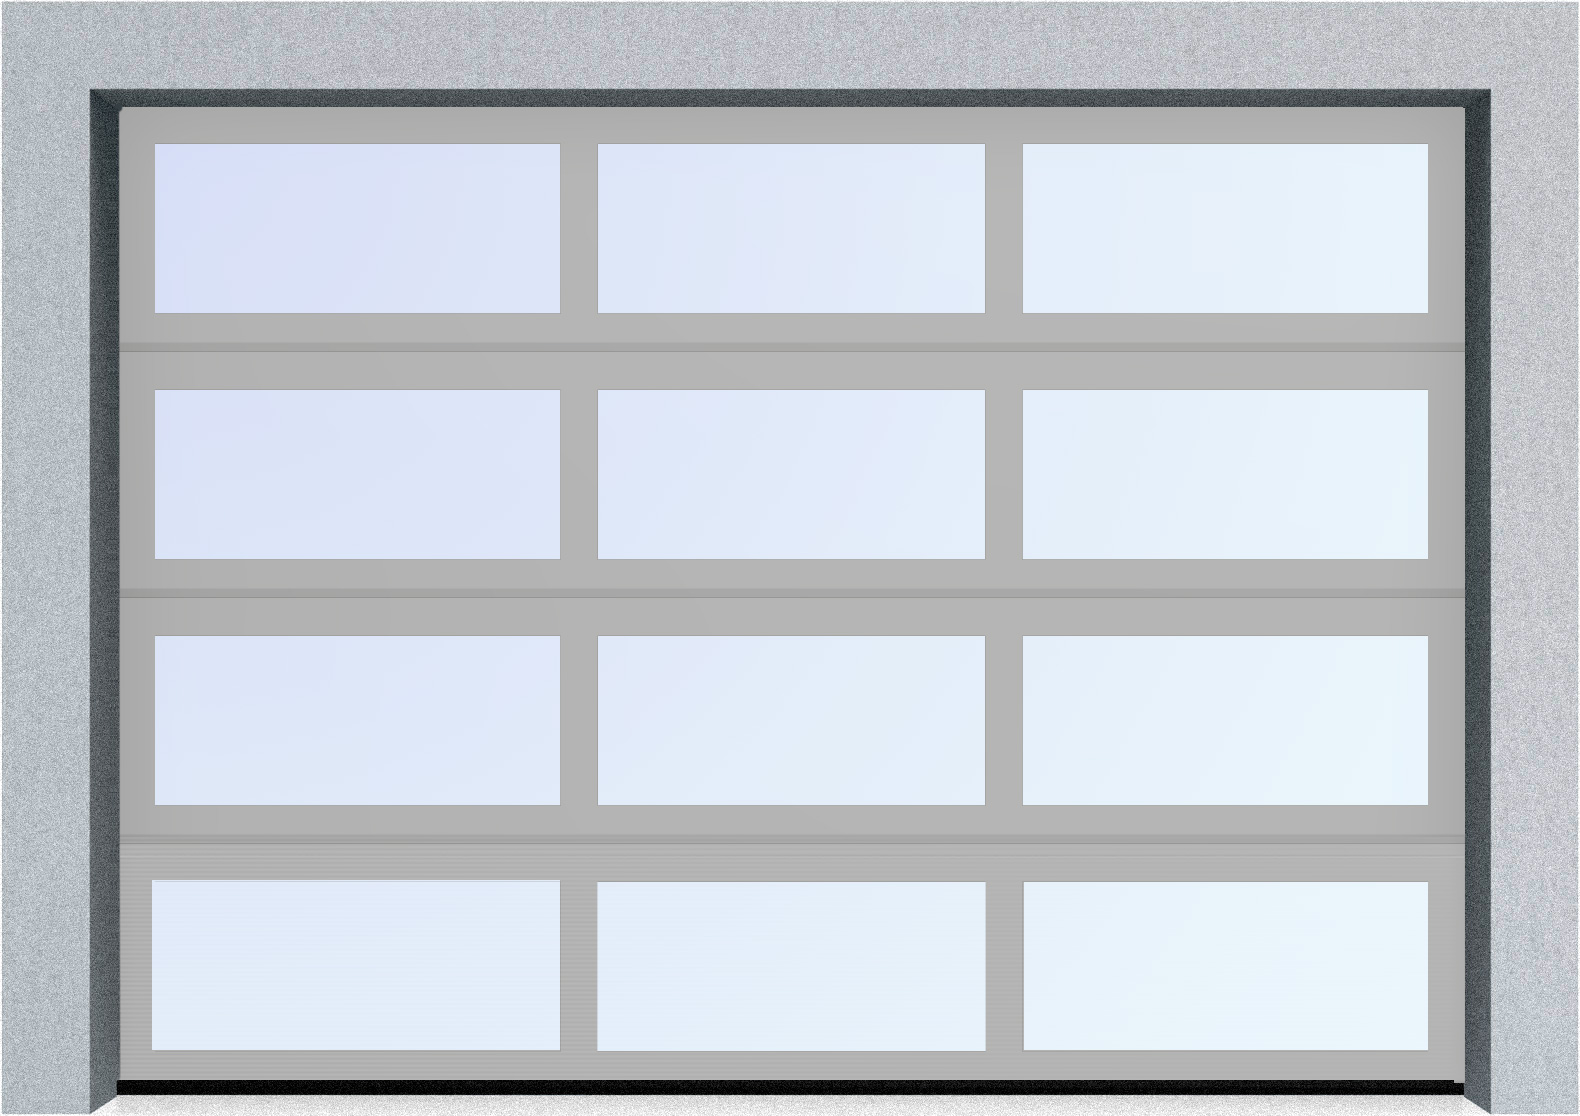  Секционные панорамные ворота серии AluTrend (АЛП) 2500х2500 нижняя панель стандартные цвета, фото 9 